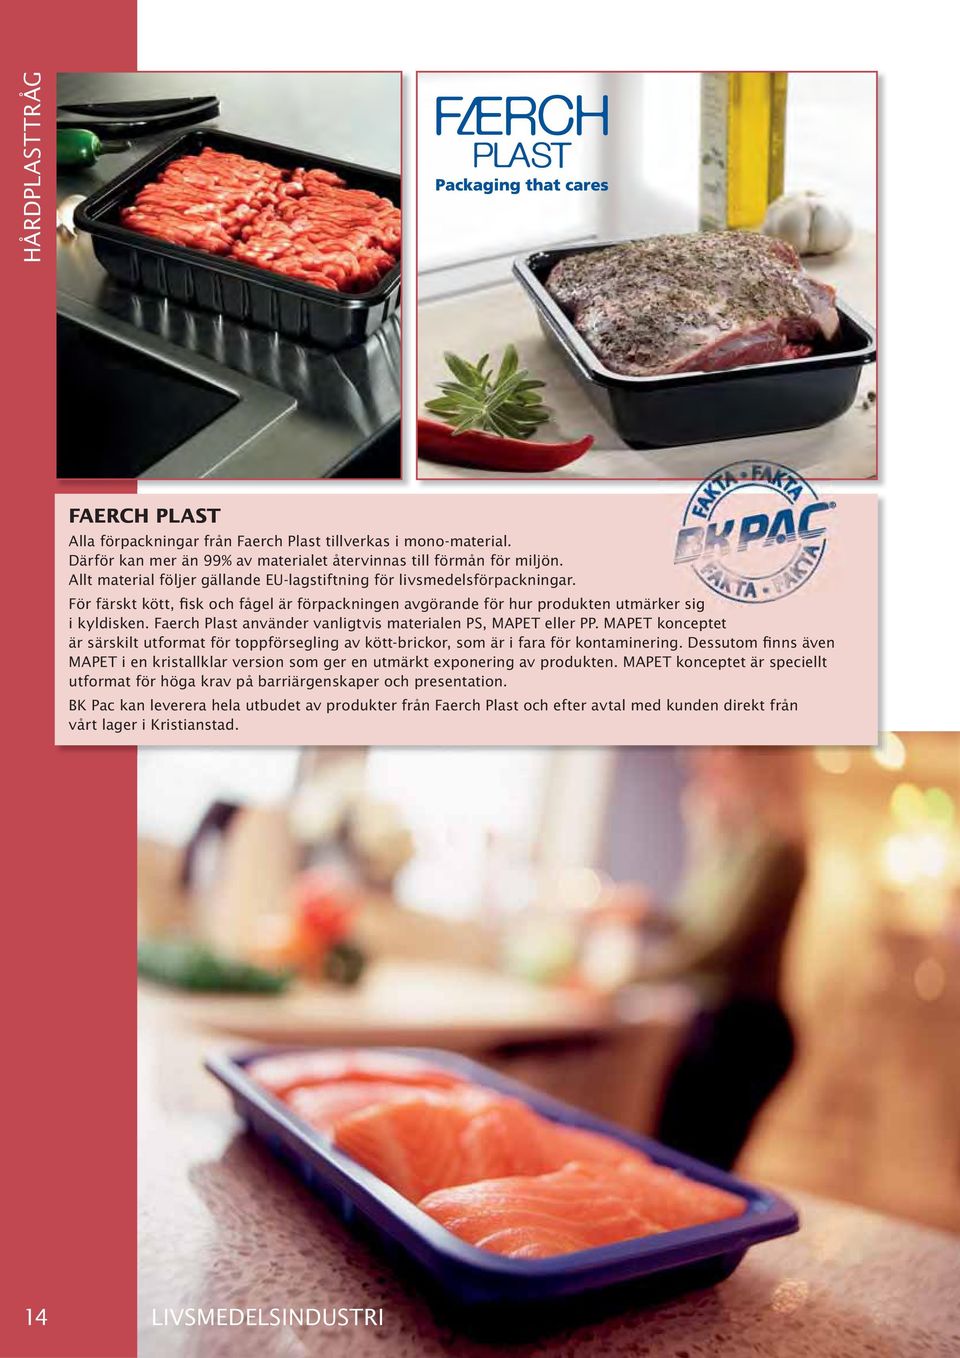 Faerch Plast använder vanligtvis materialen PS, MAPET eller PP. MAPET konceptet är särskilt utformat för toppförsegling av kött-brickor, som är i fara för kontaminering.